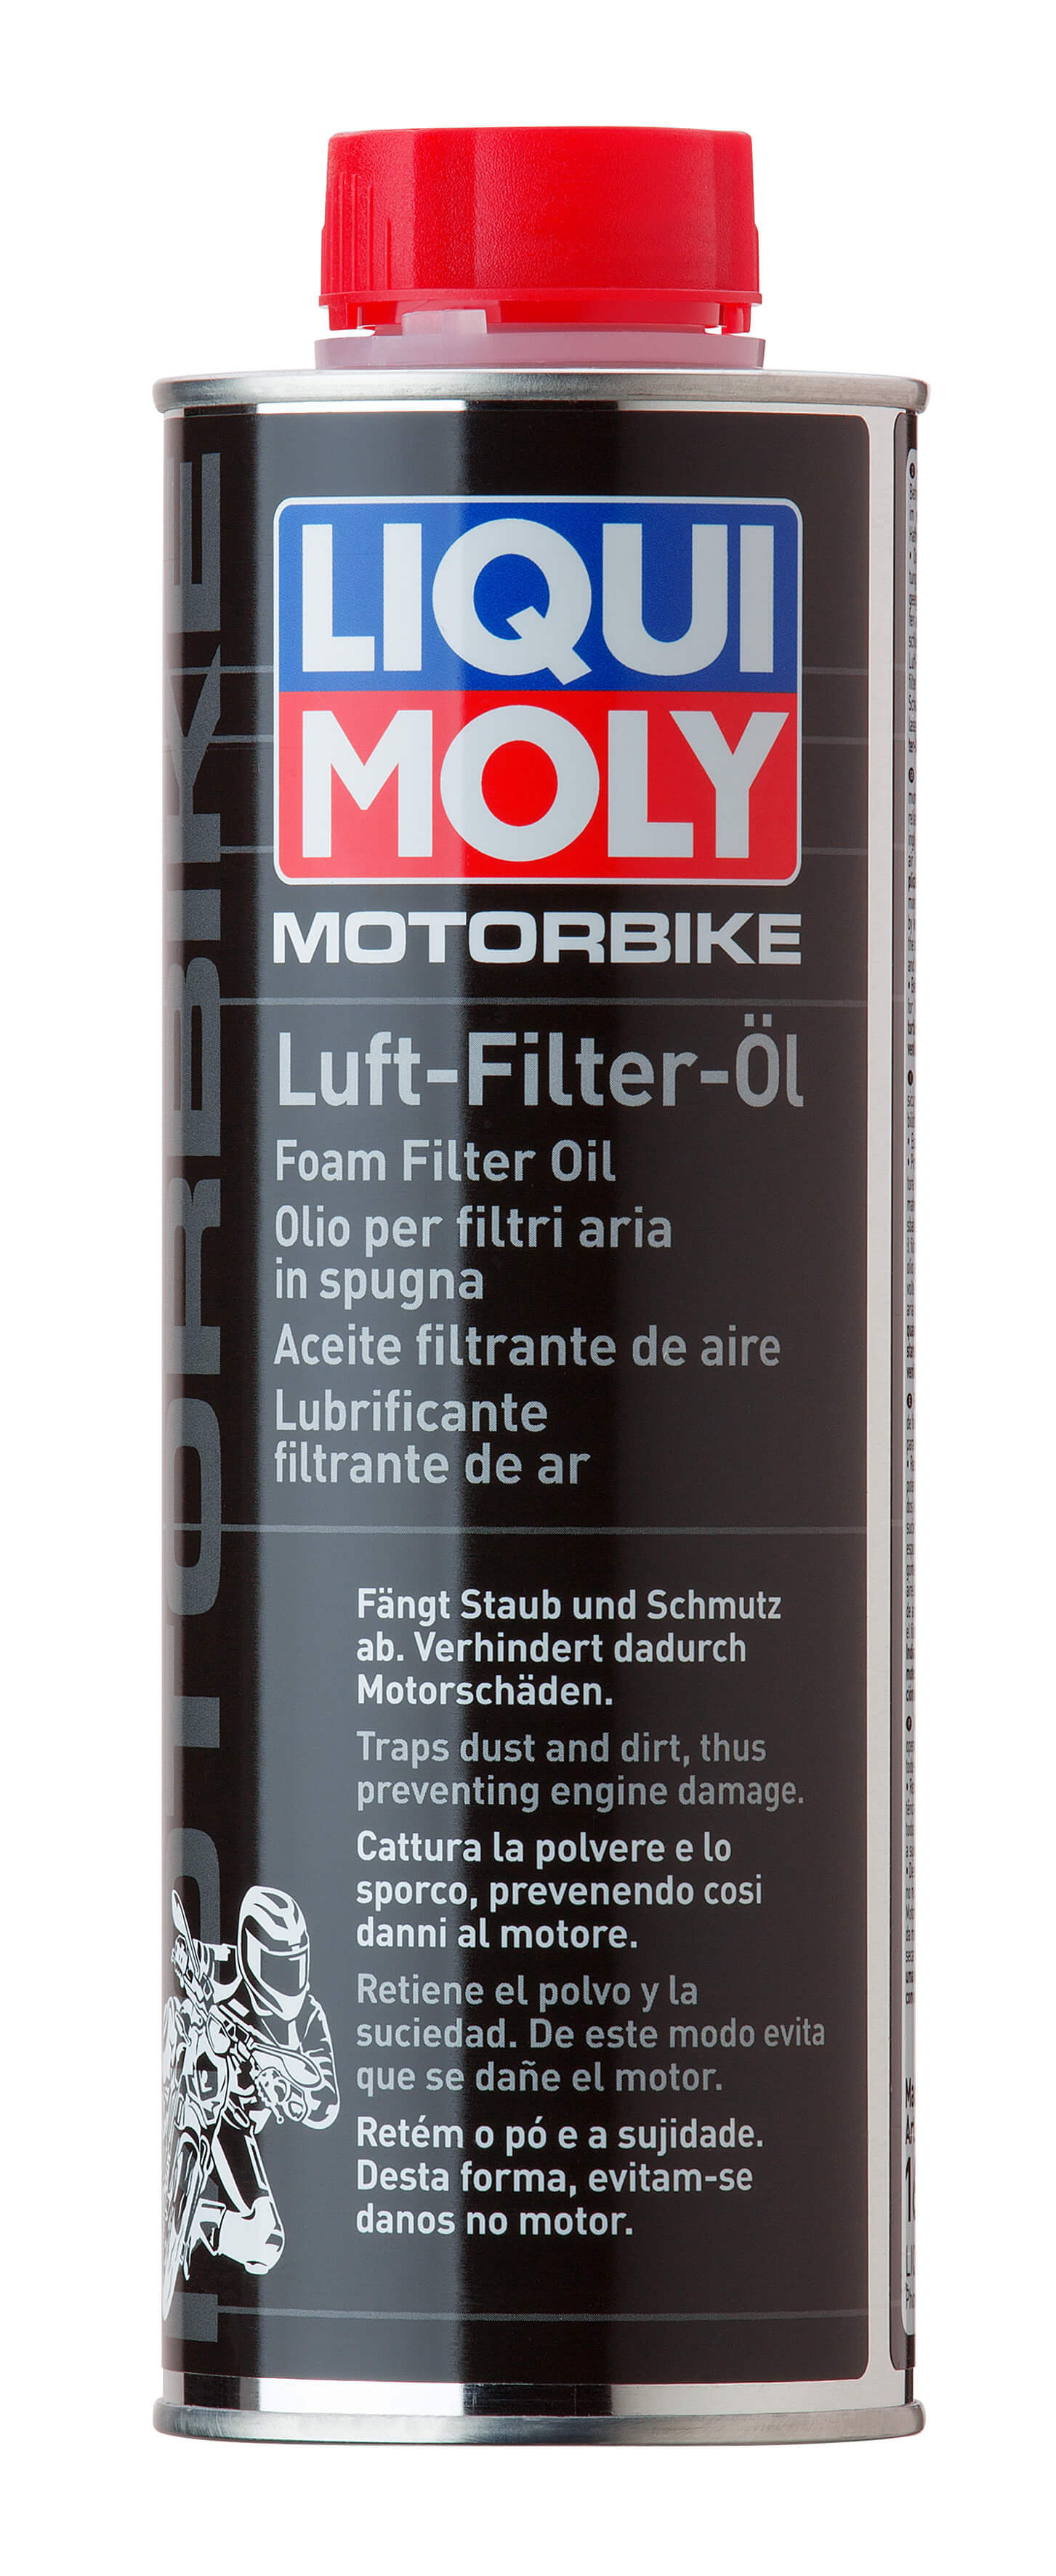 Средство д/пропитки фильтров Motorbike Luft-Filter-Oil (0,5л)